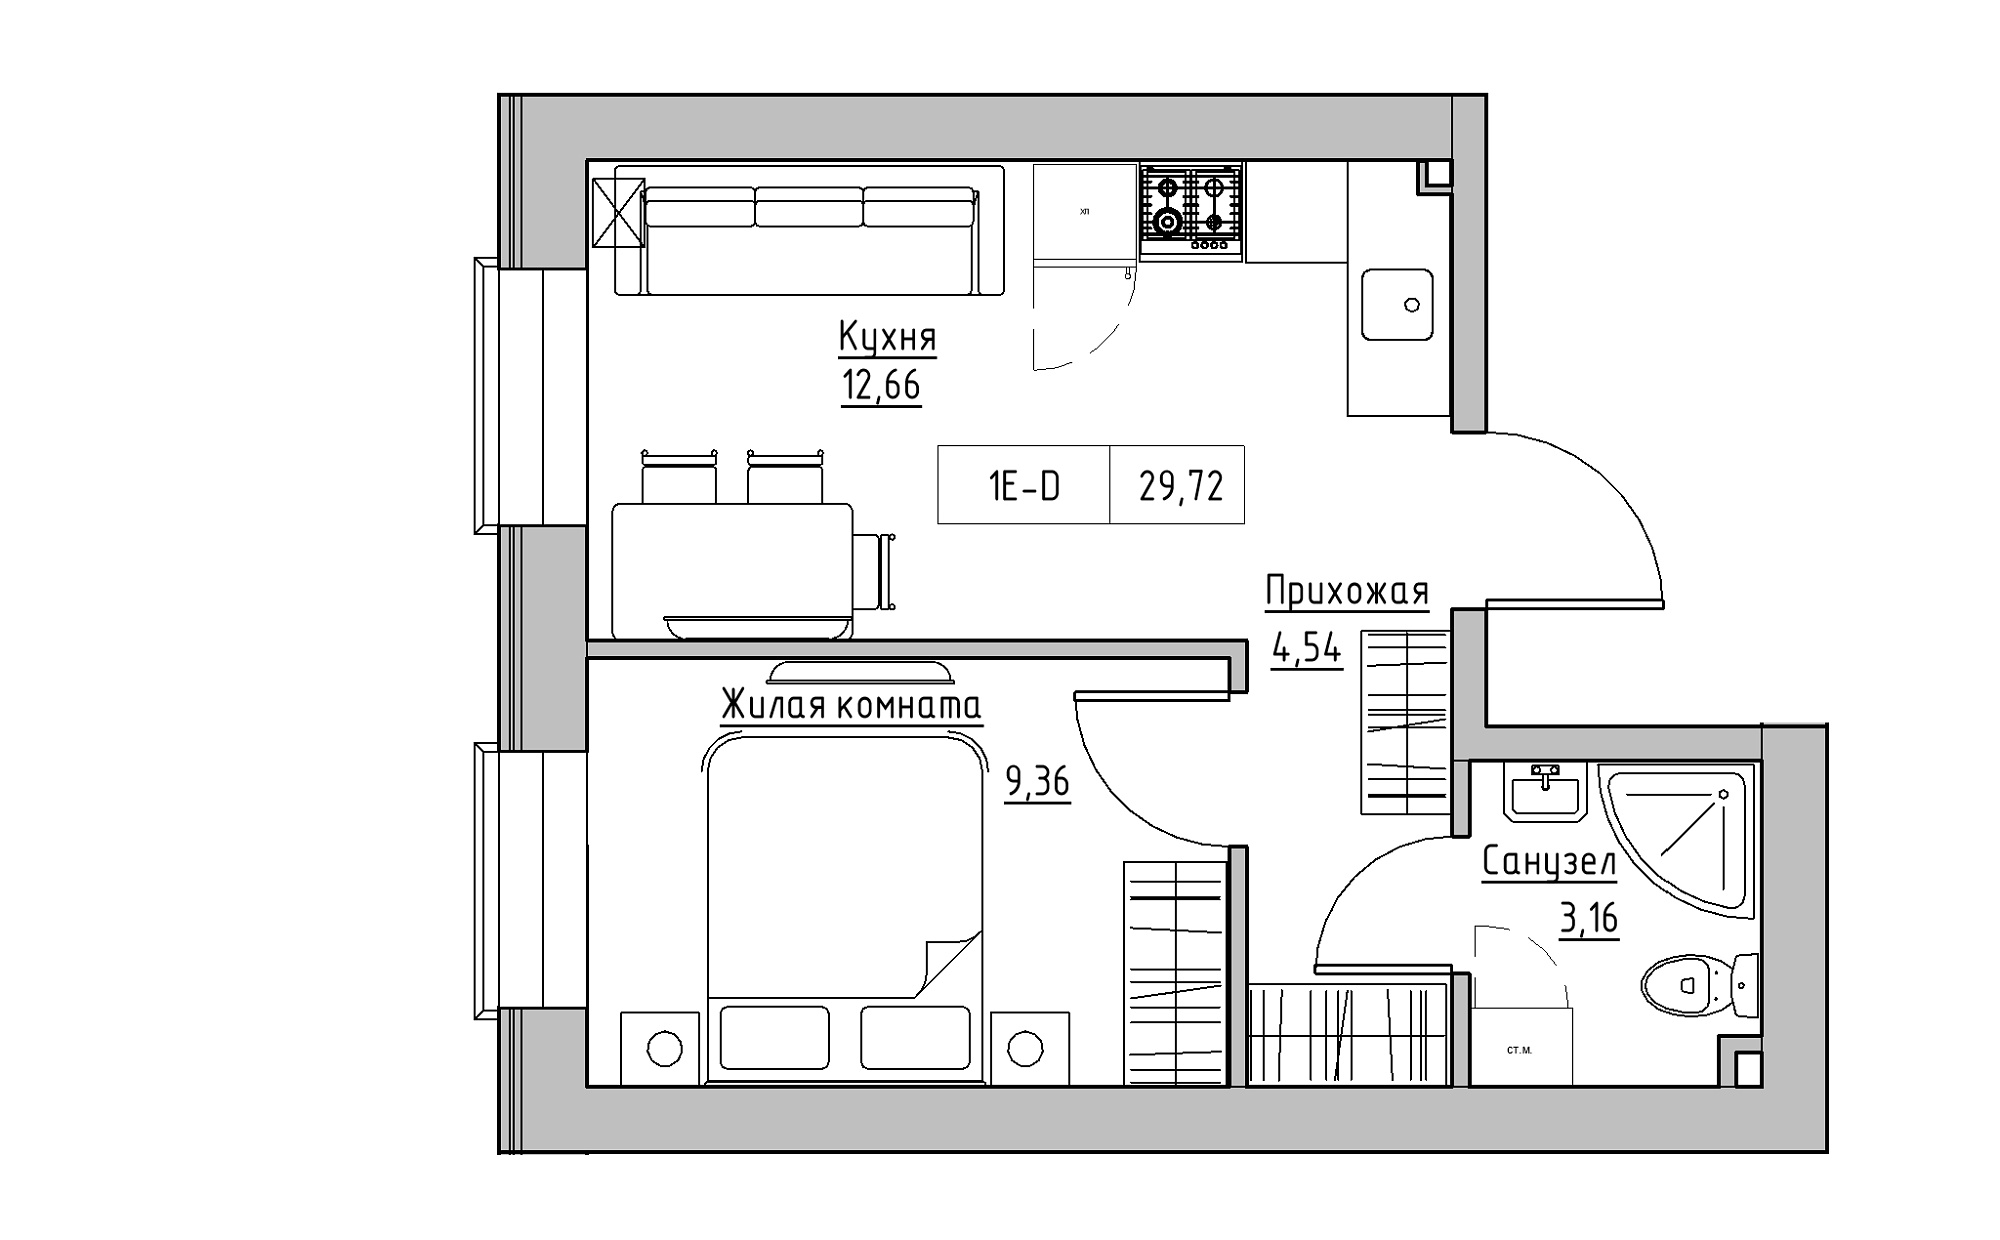 Планировка 1-к квартира площей 29.72м2, KS-022-01/0012.